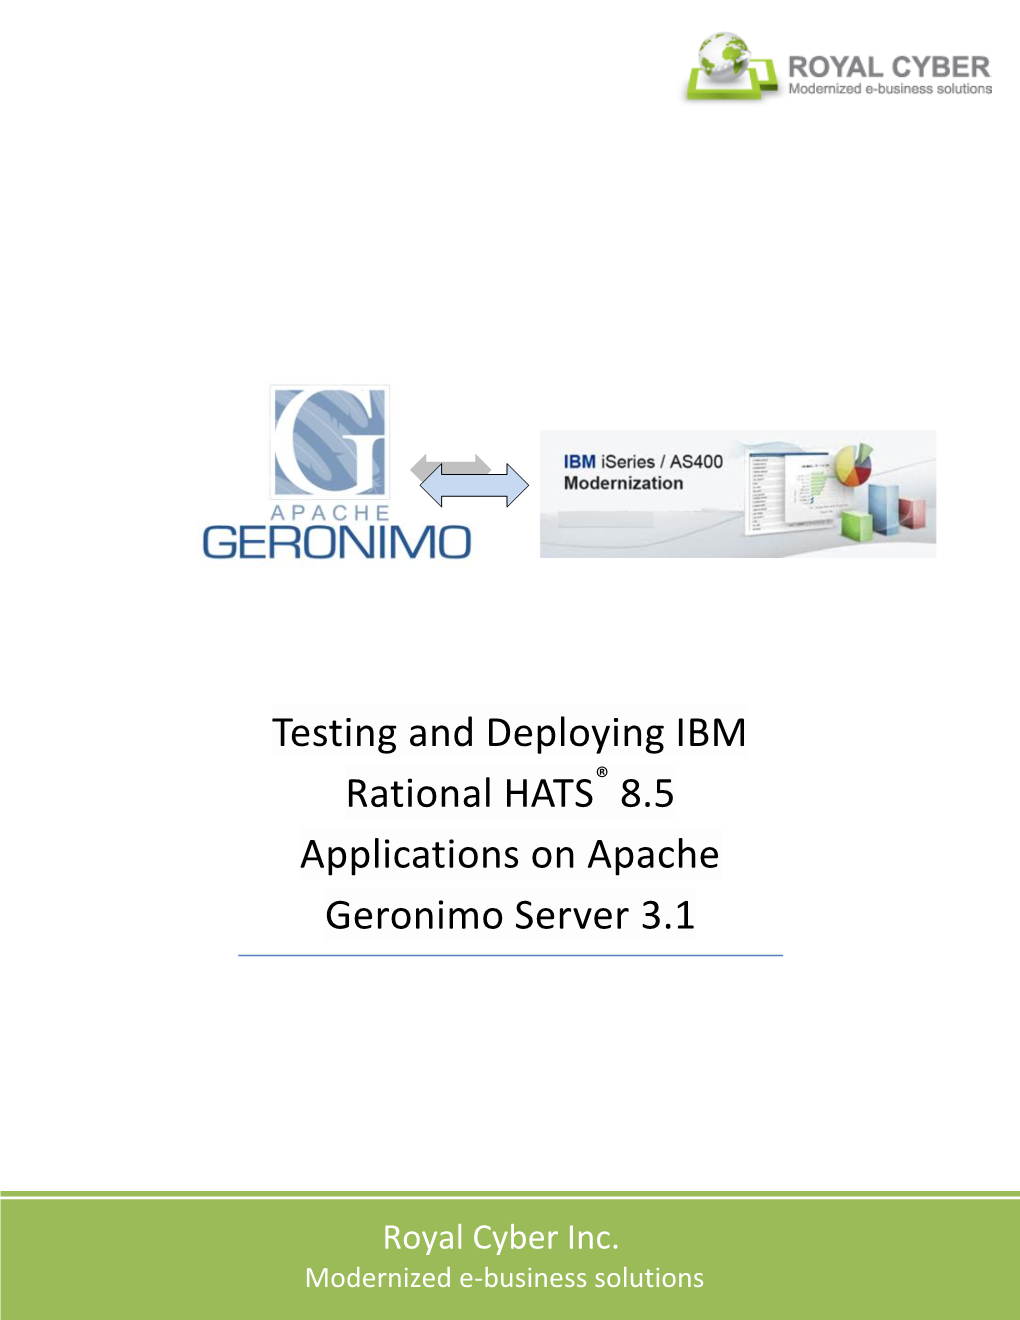 Testing and Deploying IBM Rational HATS® Applications on Apache Geronimo Server